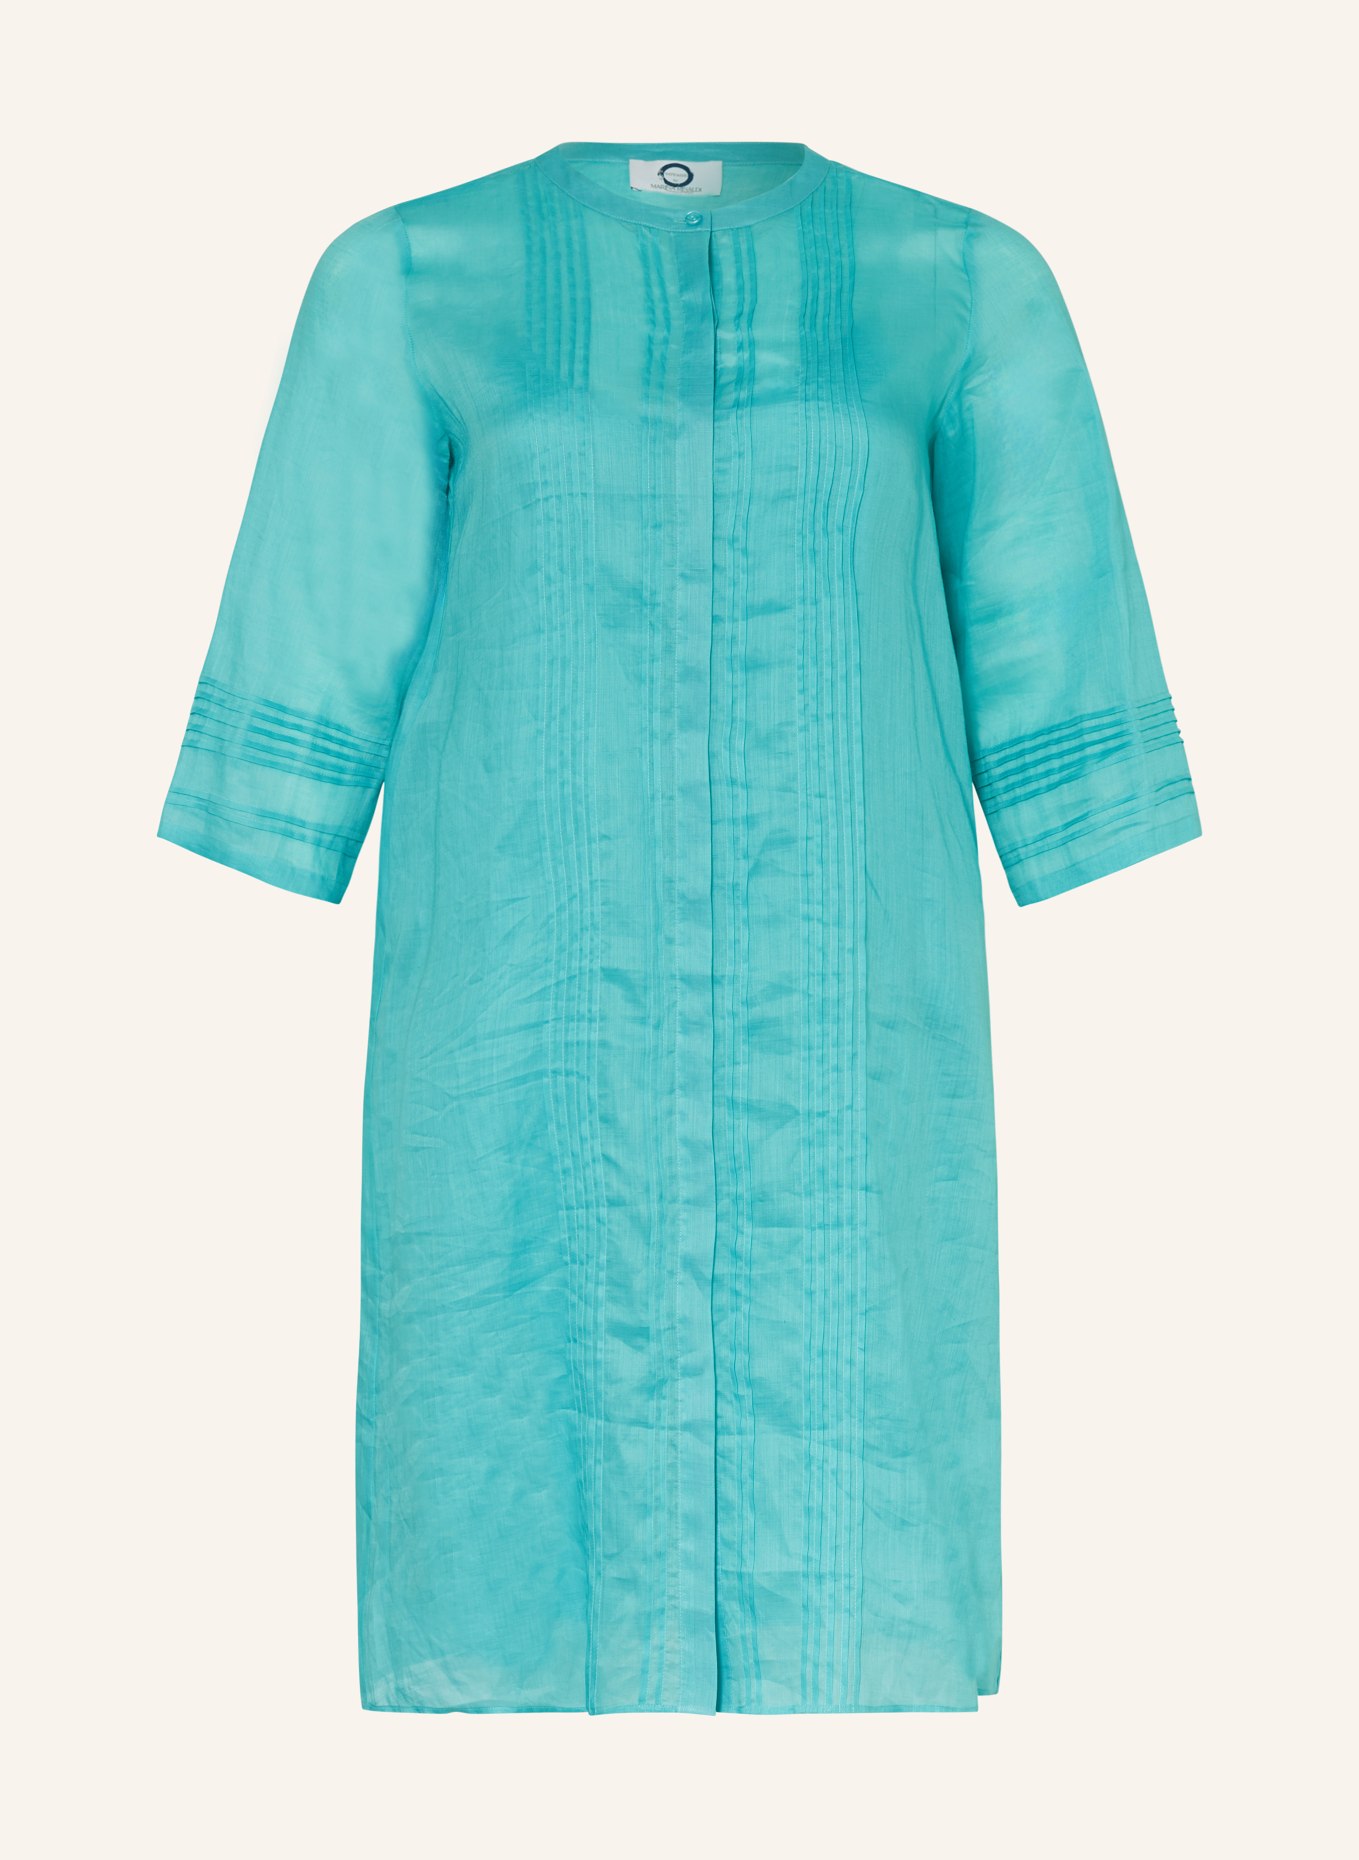 MARINA RINALDI VOYAGE Kleid mit 3/4-Arm, Farbe: TÜRKIS (Bild 1)